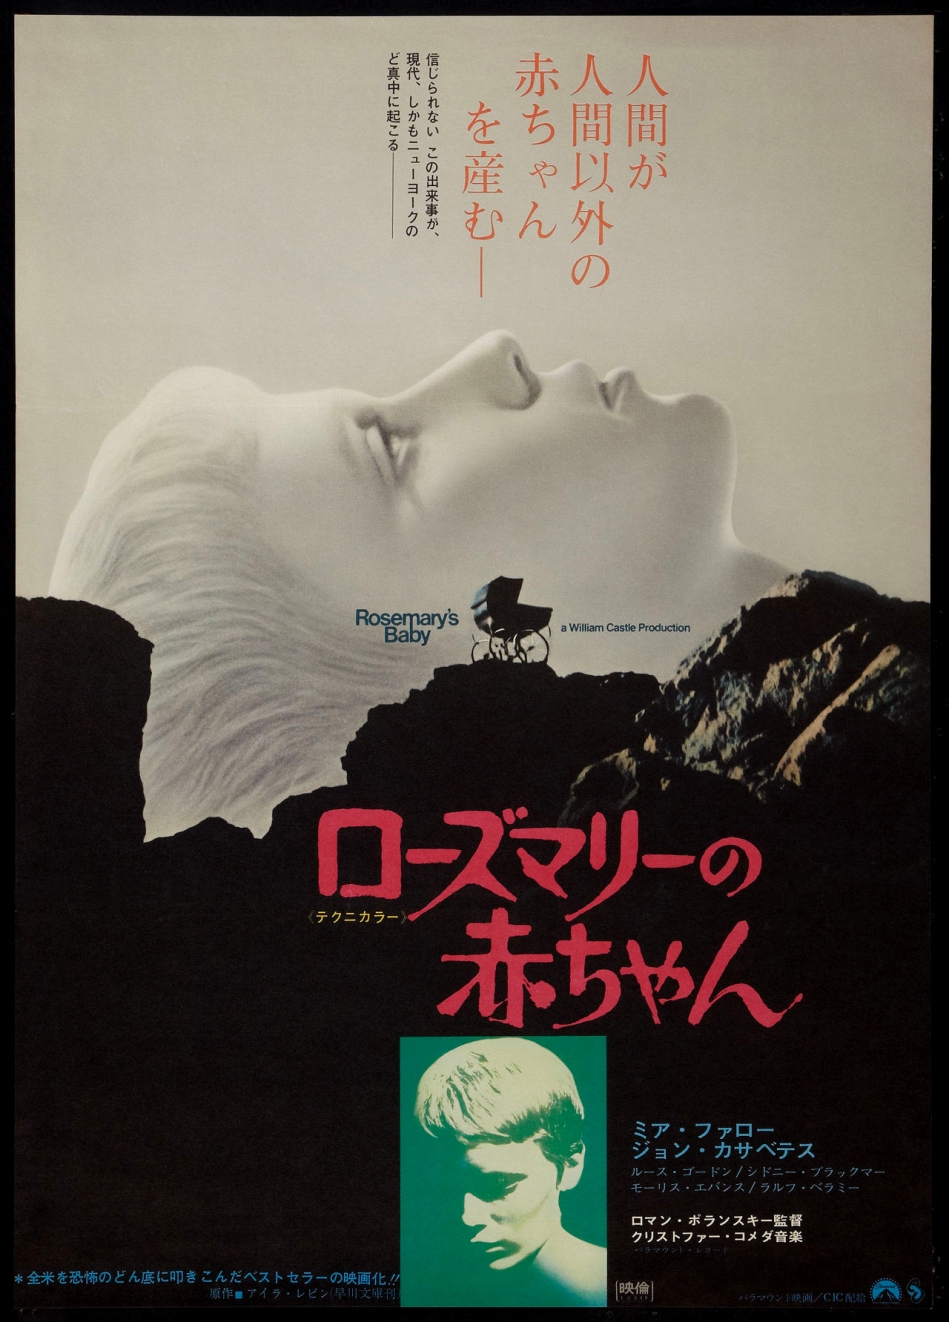 rosemarys-baby-japanese-poster.jpg